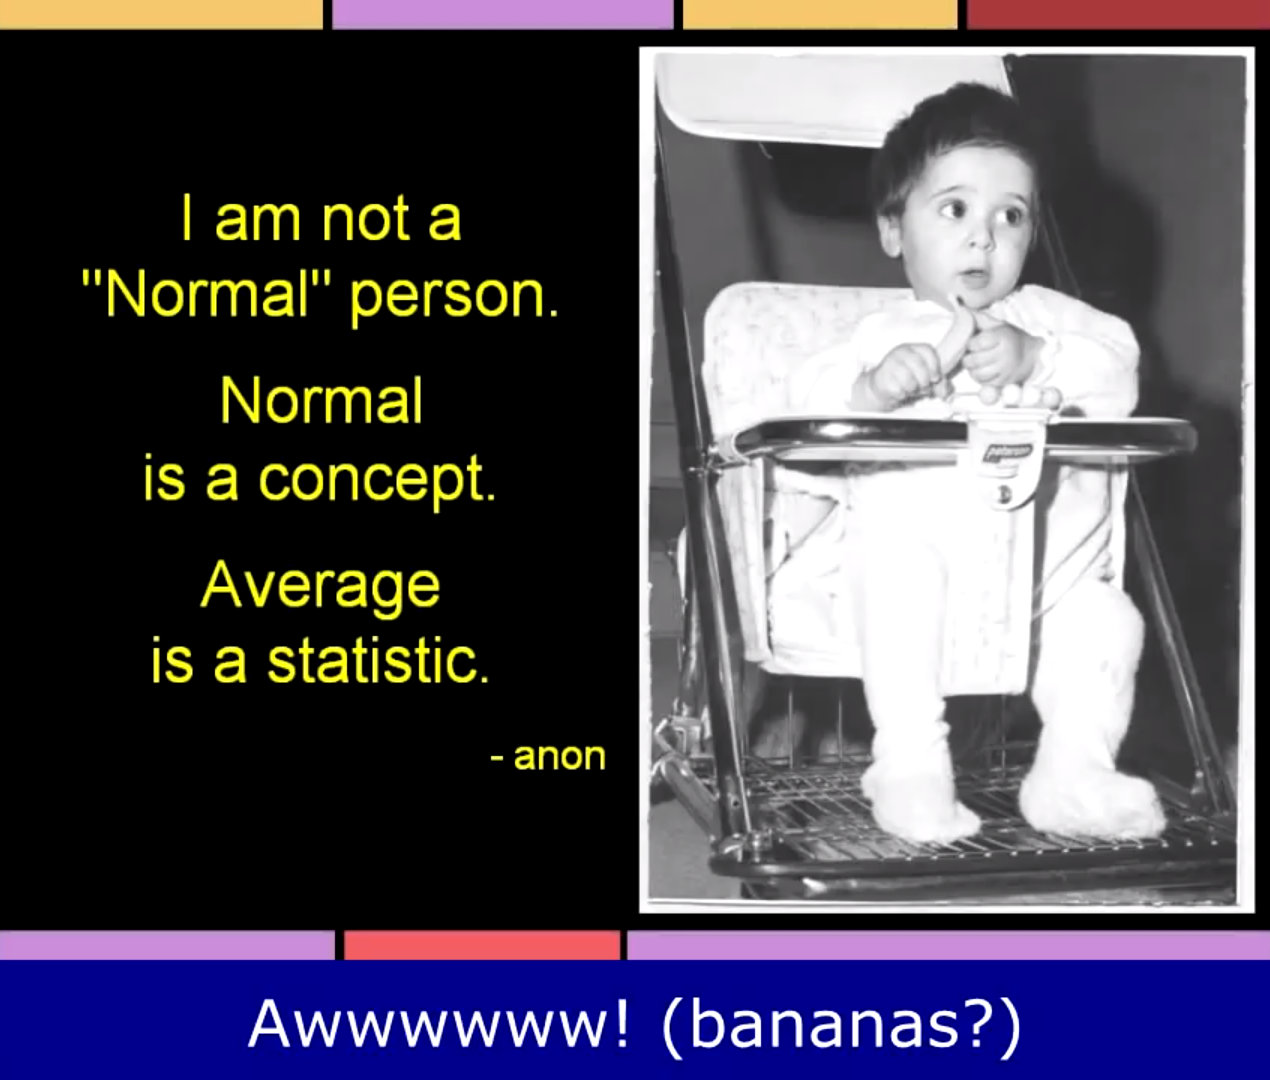 Joe J Thomas: Banana Baby